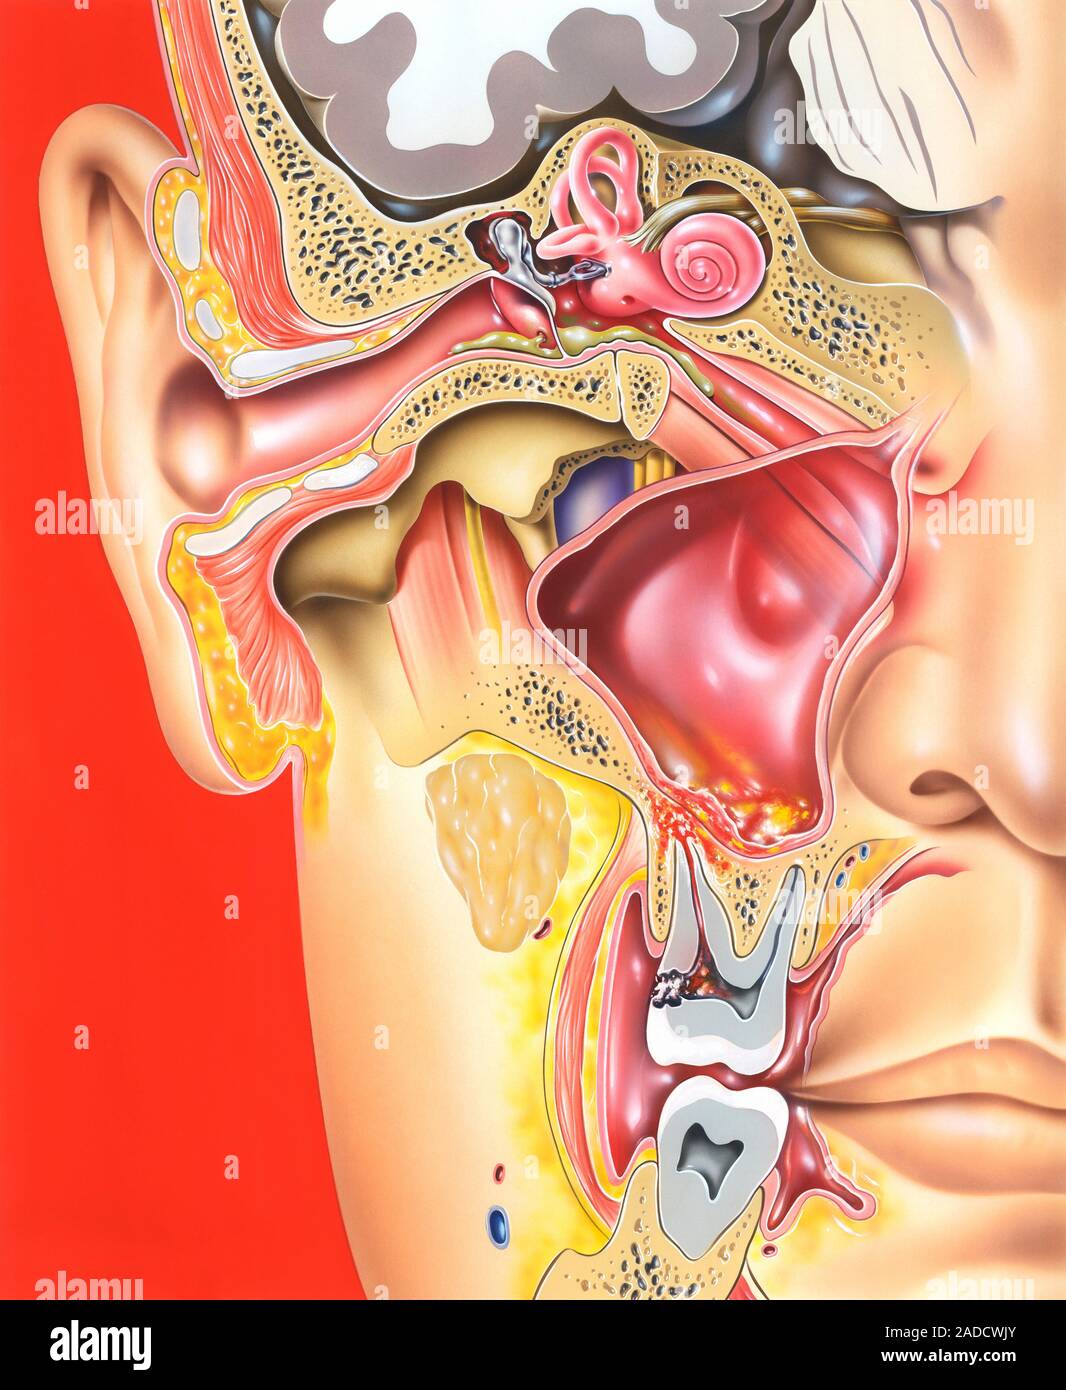 Mittelohr, Zahn und Nebenhöhlenentzündungen. Abbildung: eine Schnittansicht  der rechten Seite des Kopfes, die das Ohr, ein kieferhöhle und zwei Mola  Stockfotografie - Alamy